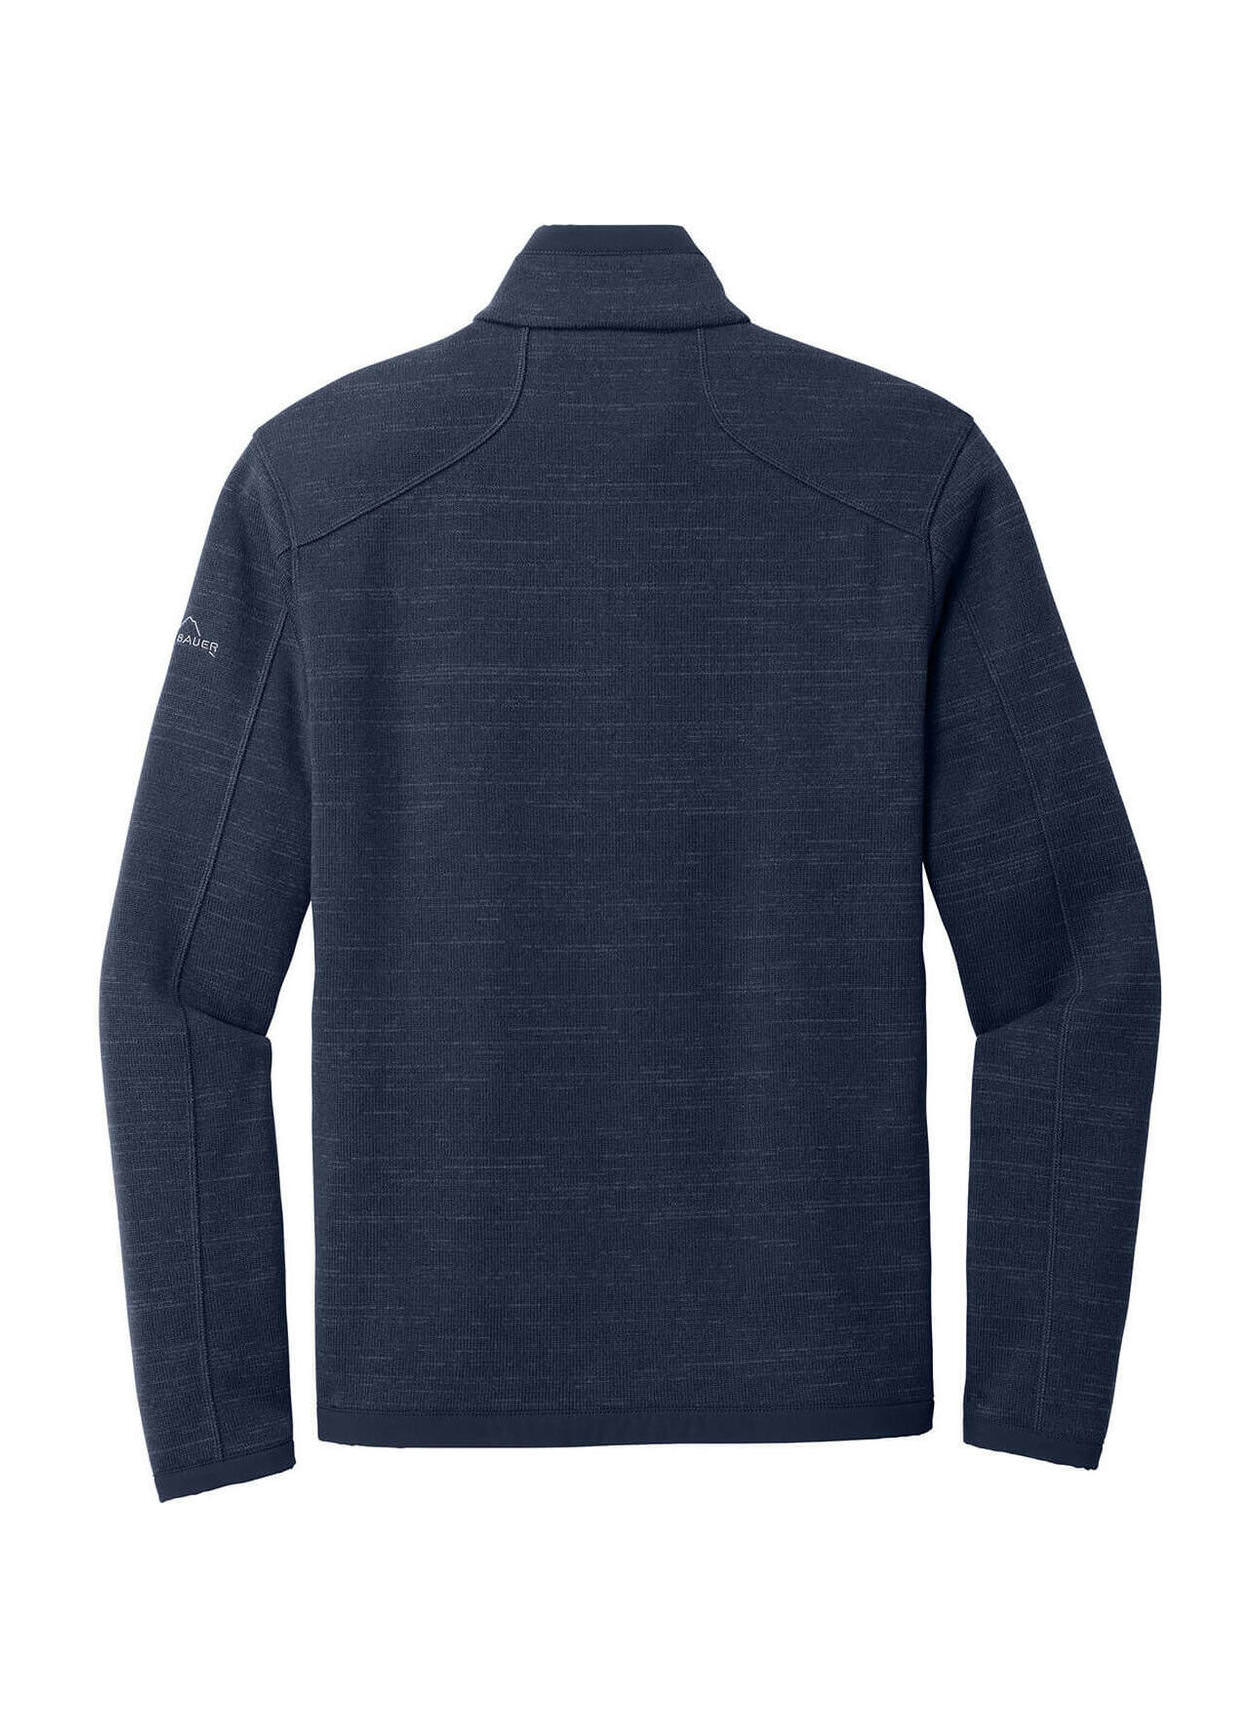 Eddie Bauer Sweater Fleece Jacket Men's River Blue Heather EB250